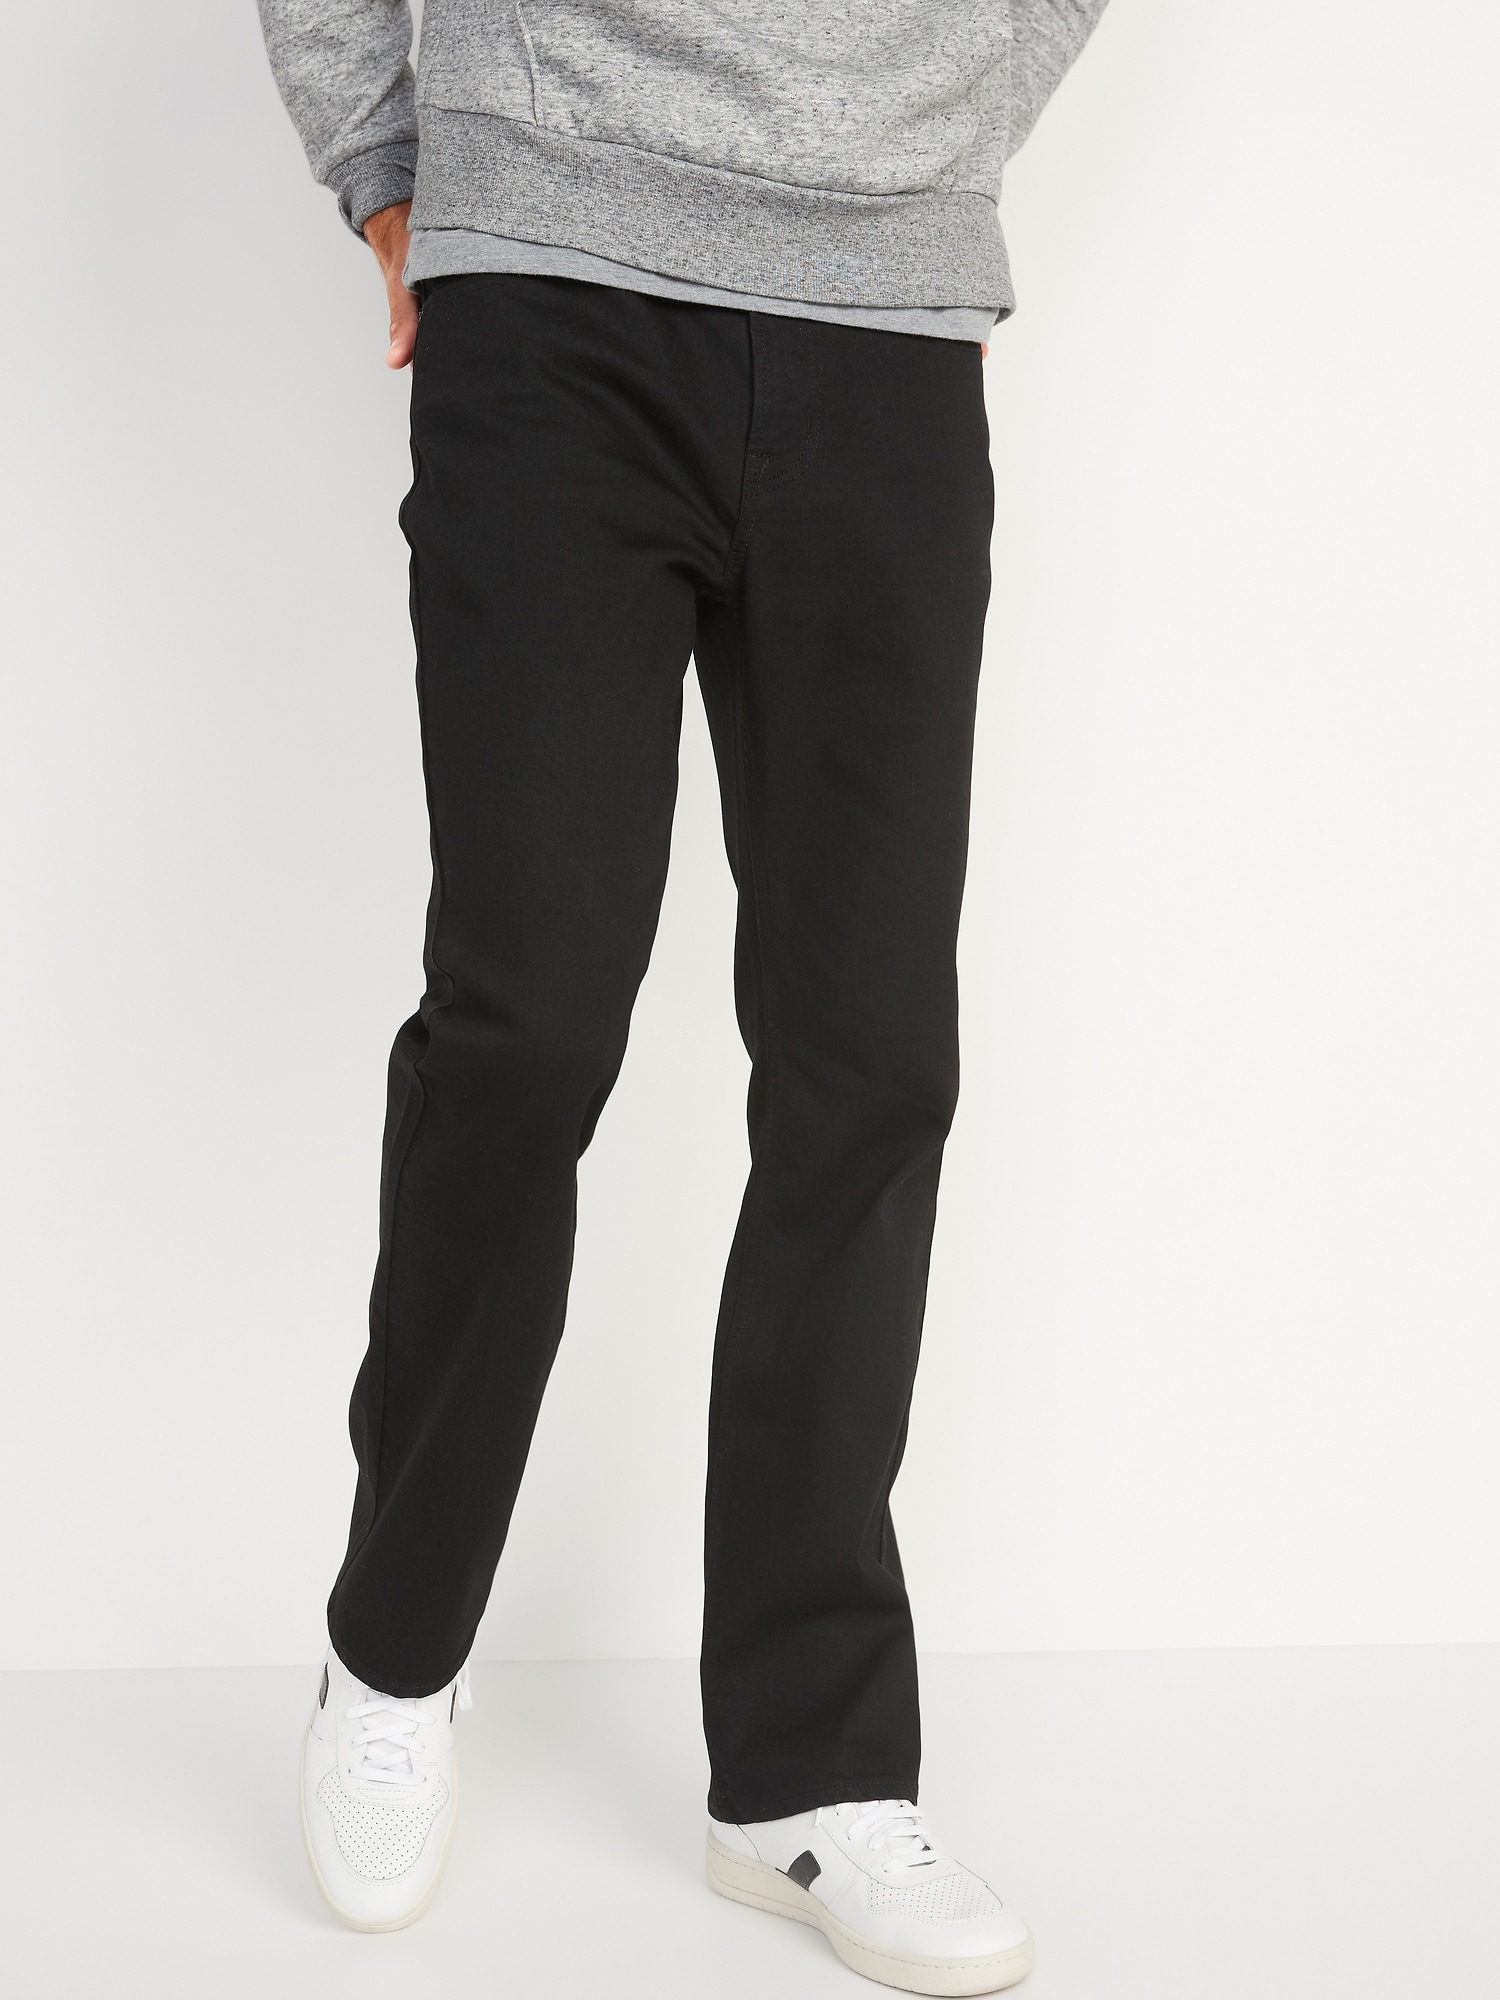 Straight Built-In Flex Black Jeans for Men | Old Navy